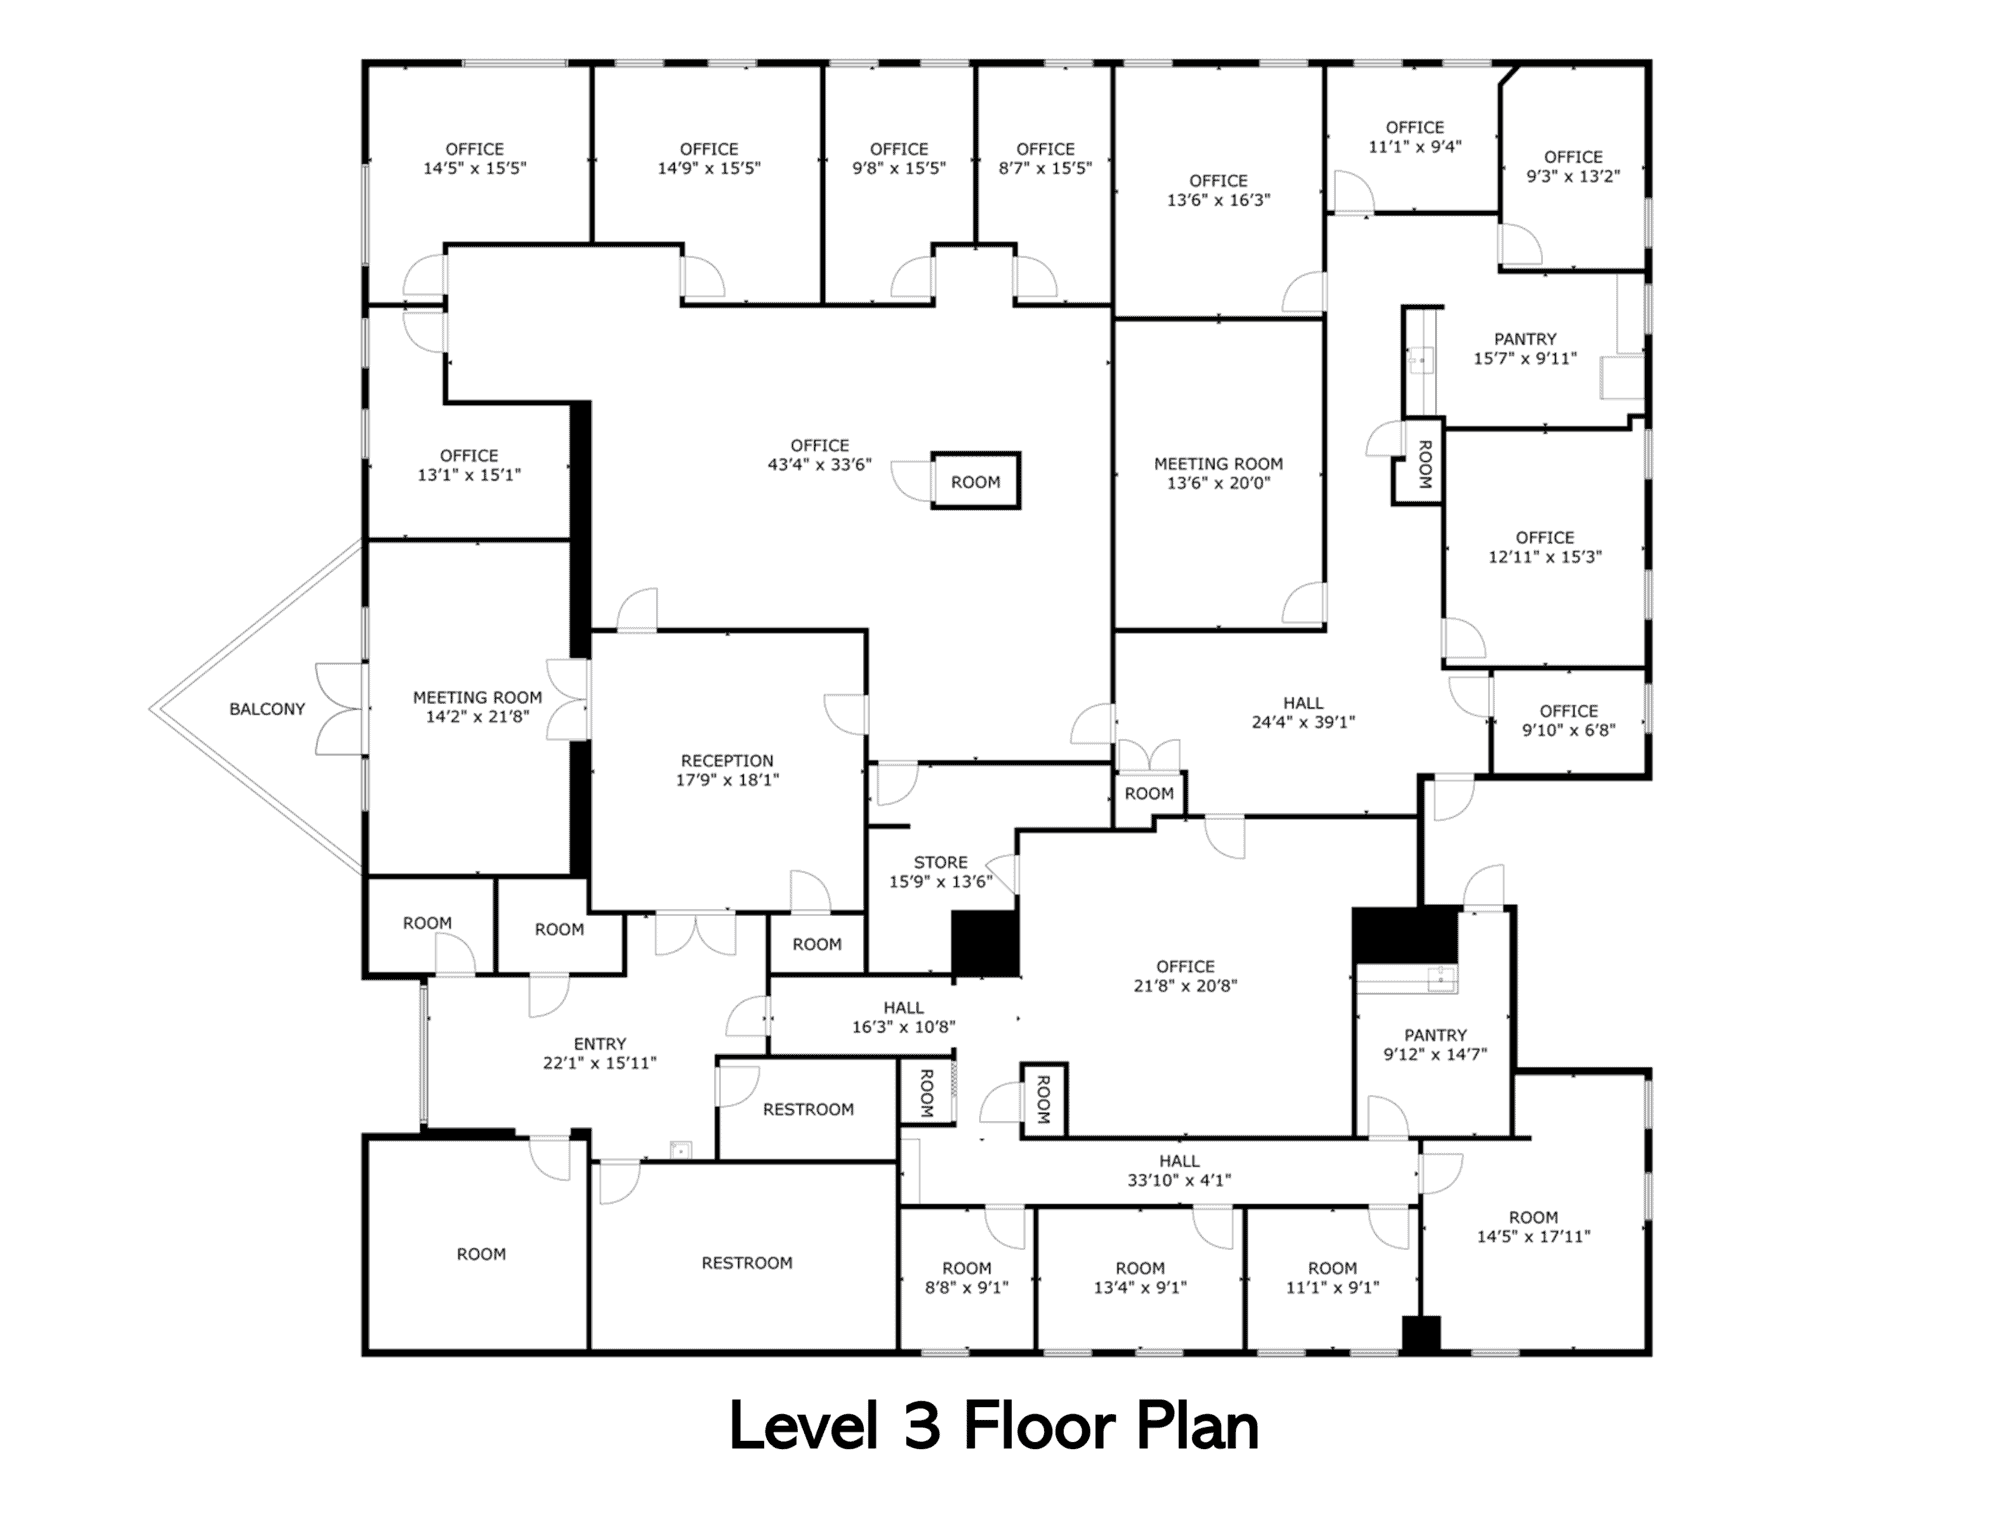 Level 3 Floor Plan